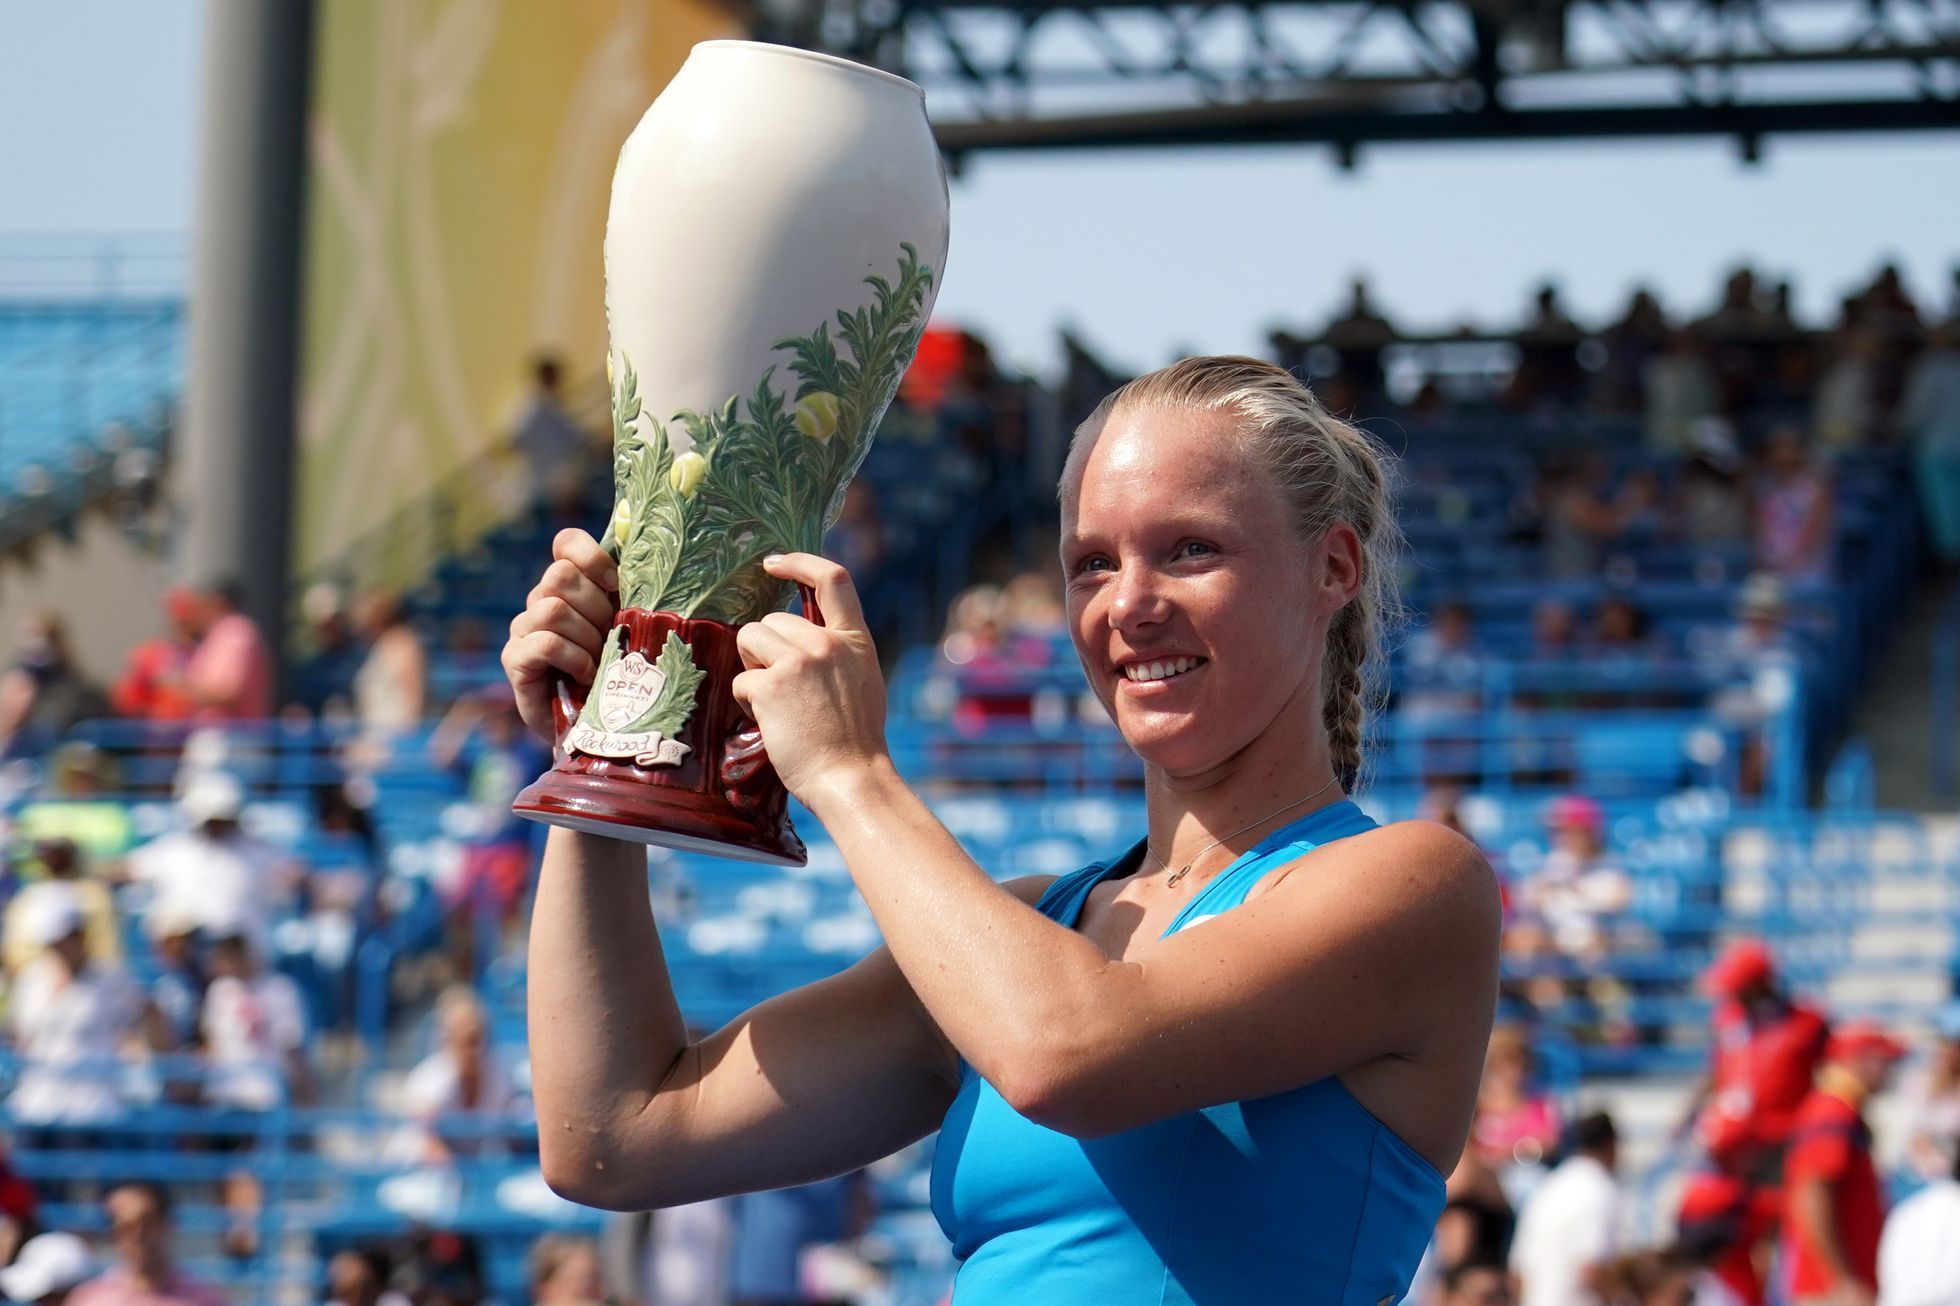 Tenistka Kiki Bertensová s titulem za vítězství na turnaji v Cincinnati 2018